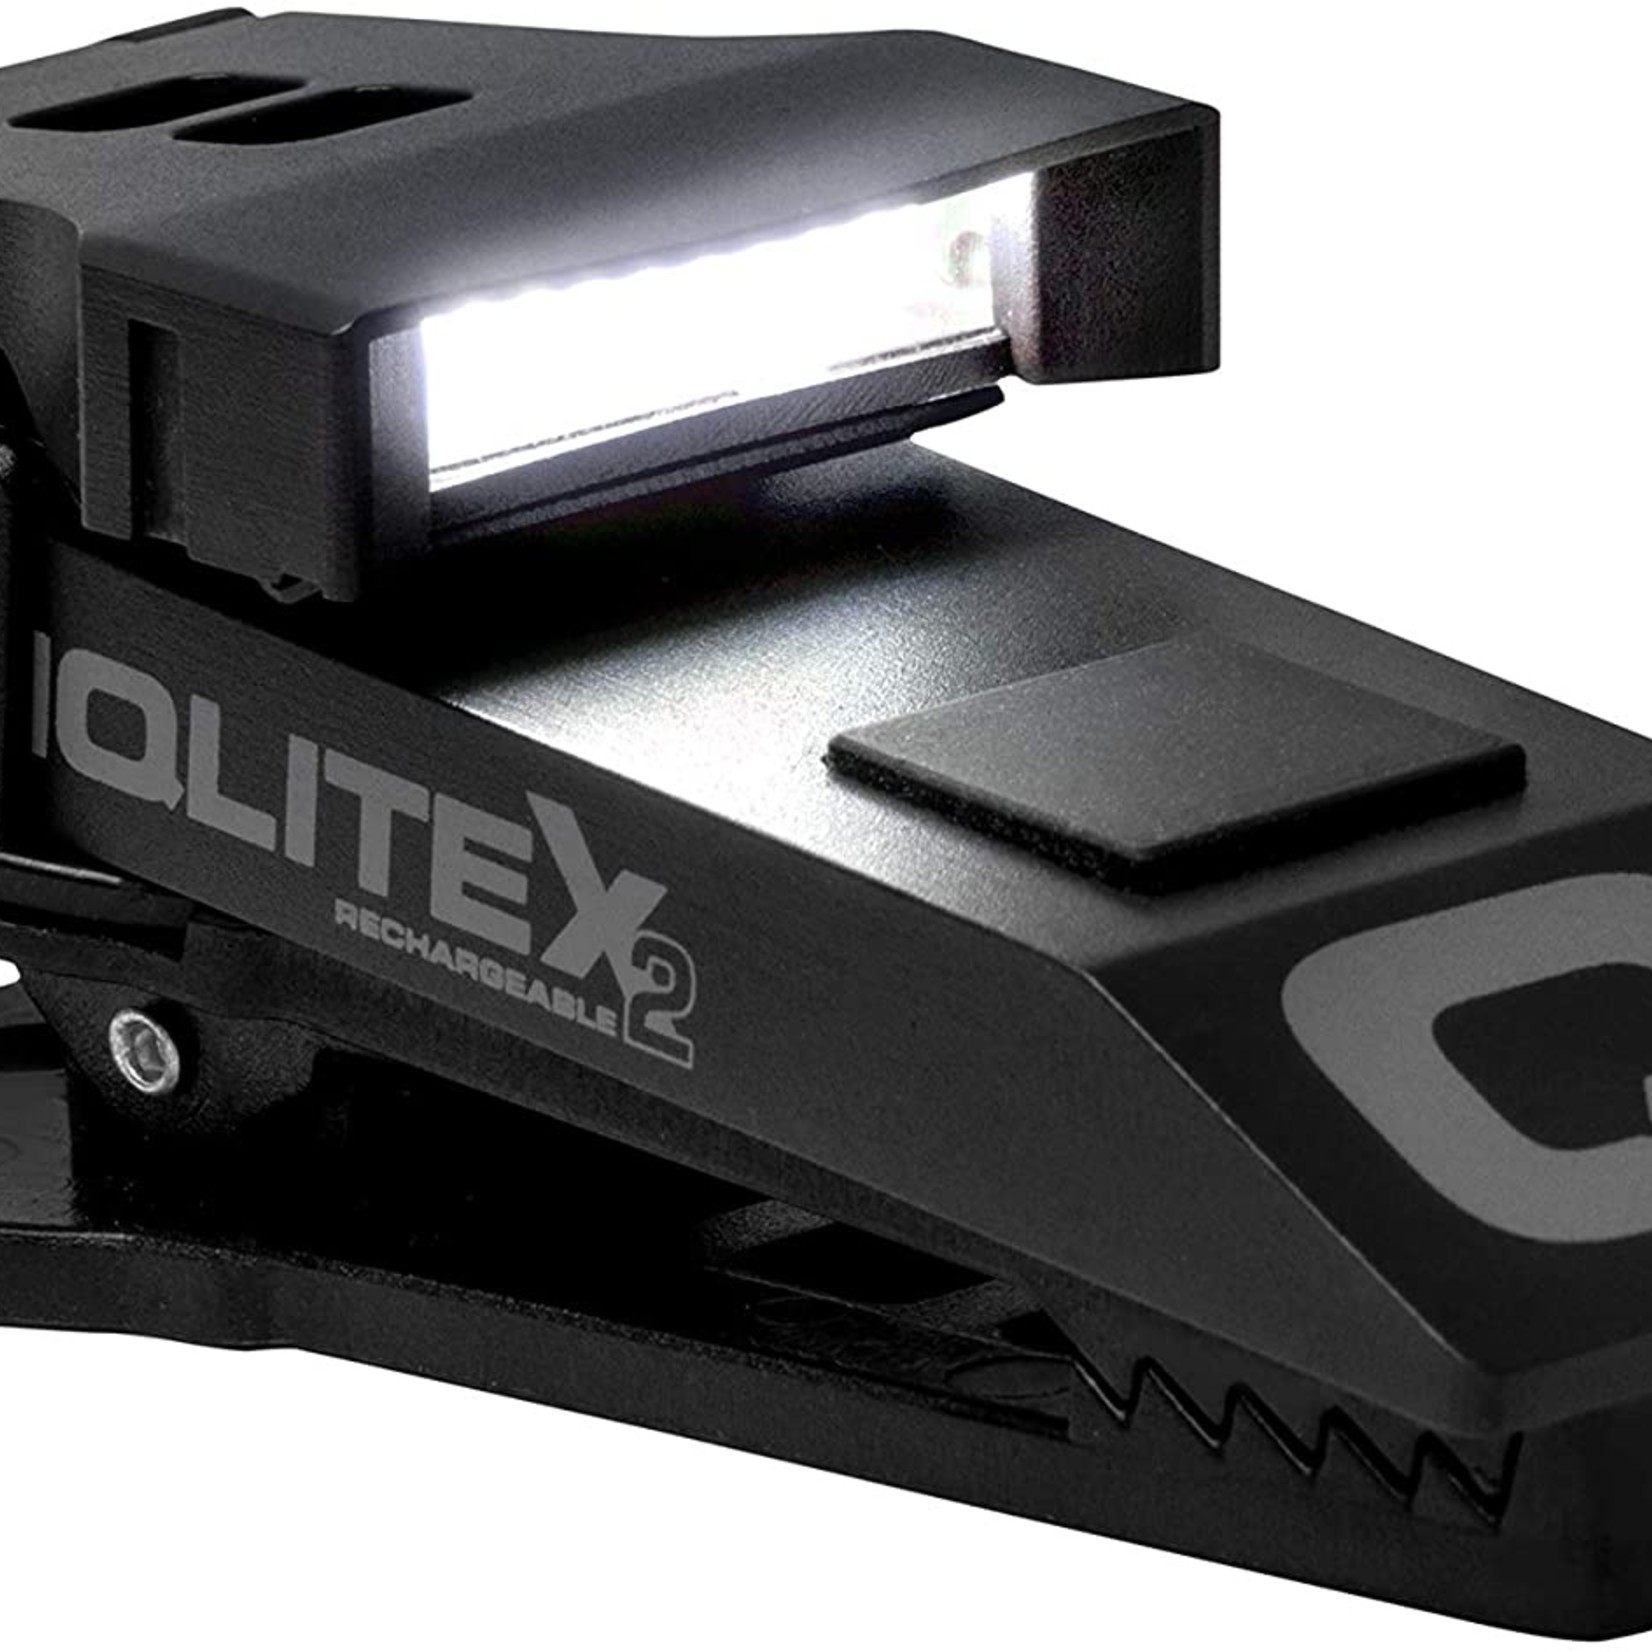 Quiqlite - X2 USB Rechargeable Aluminum Housing - 200L